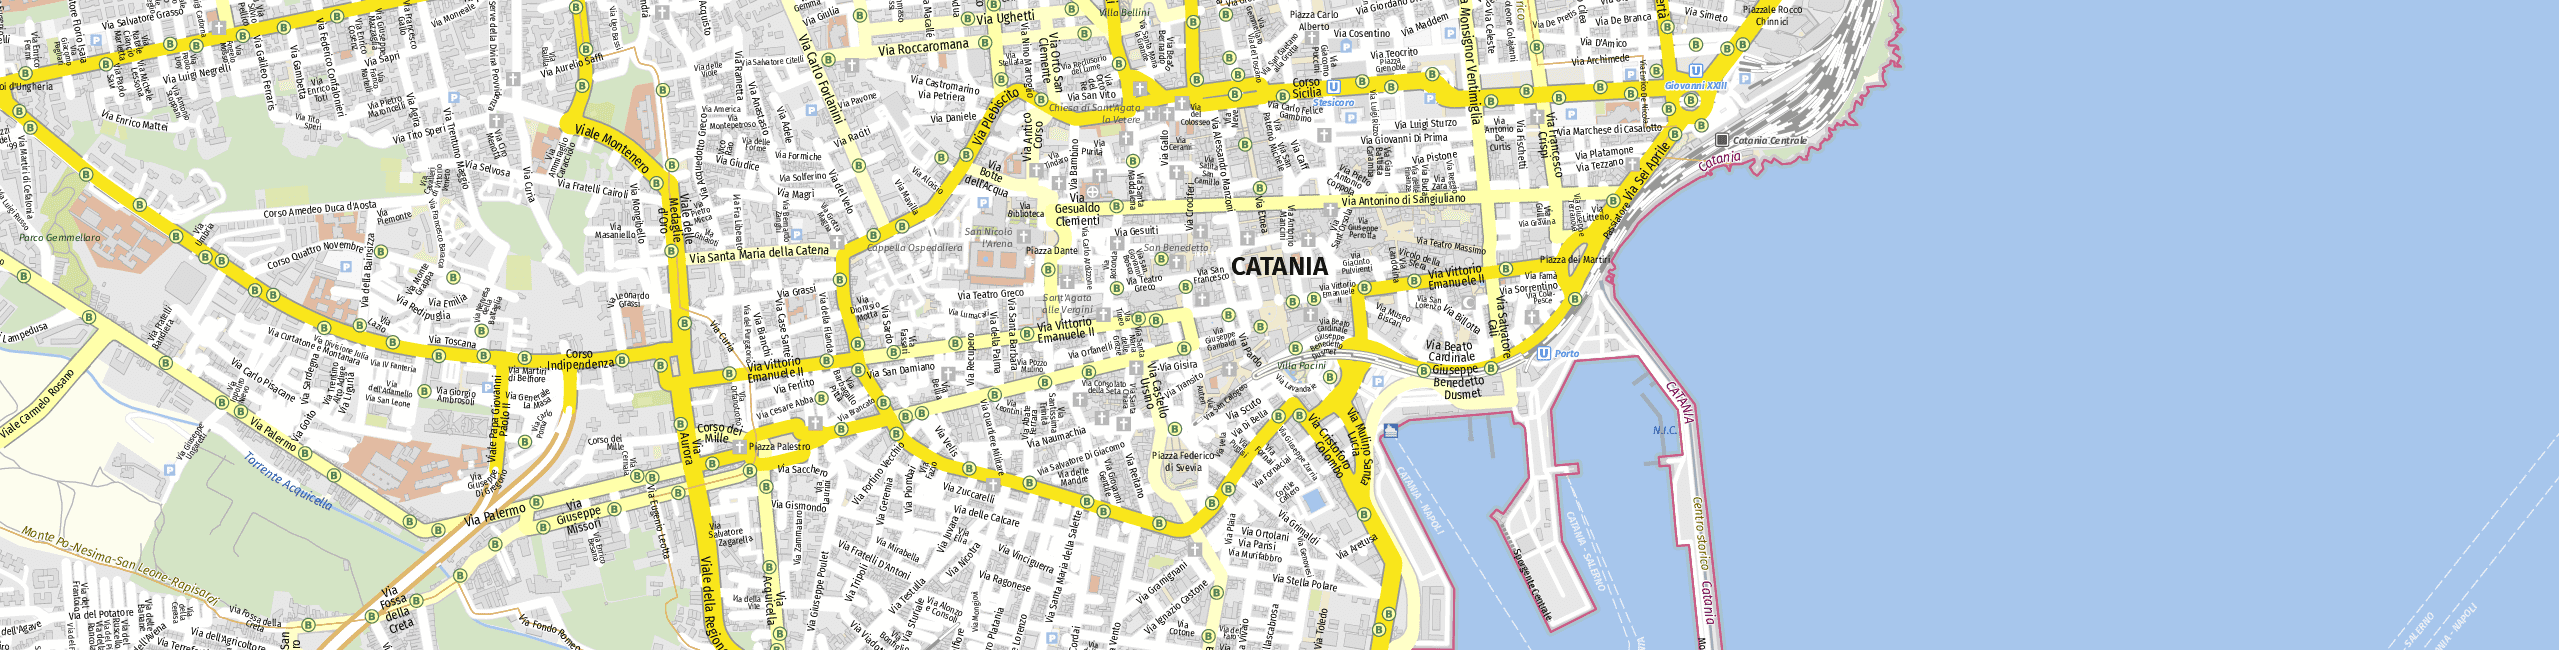 Stadtplan Catania zum Downloaden.